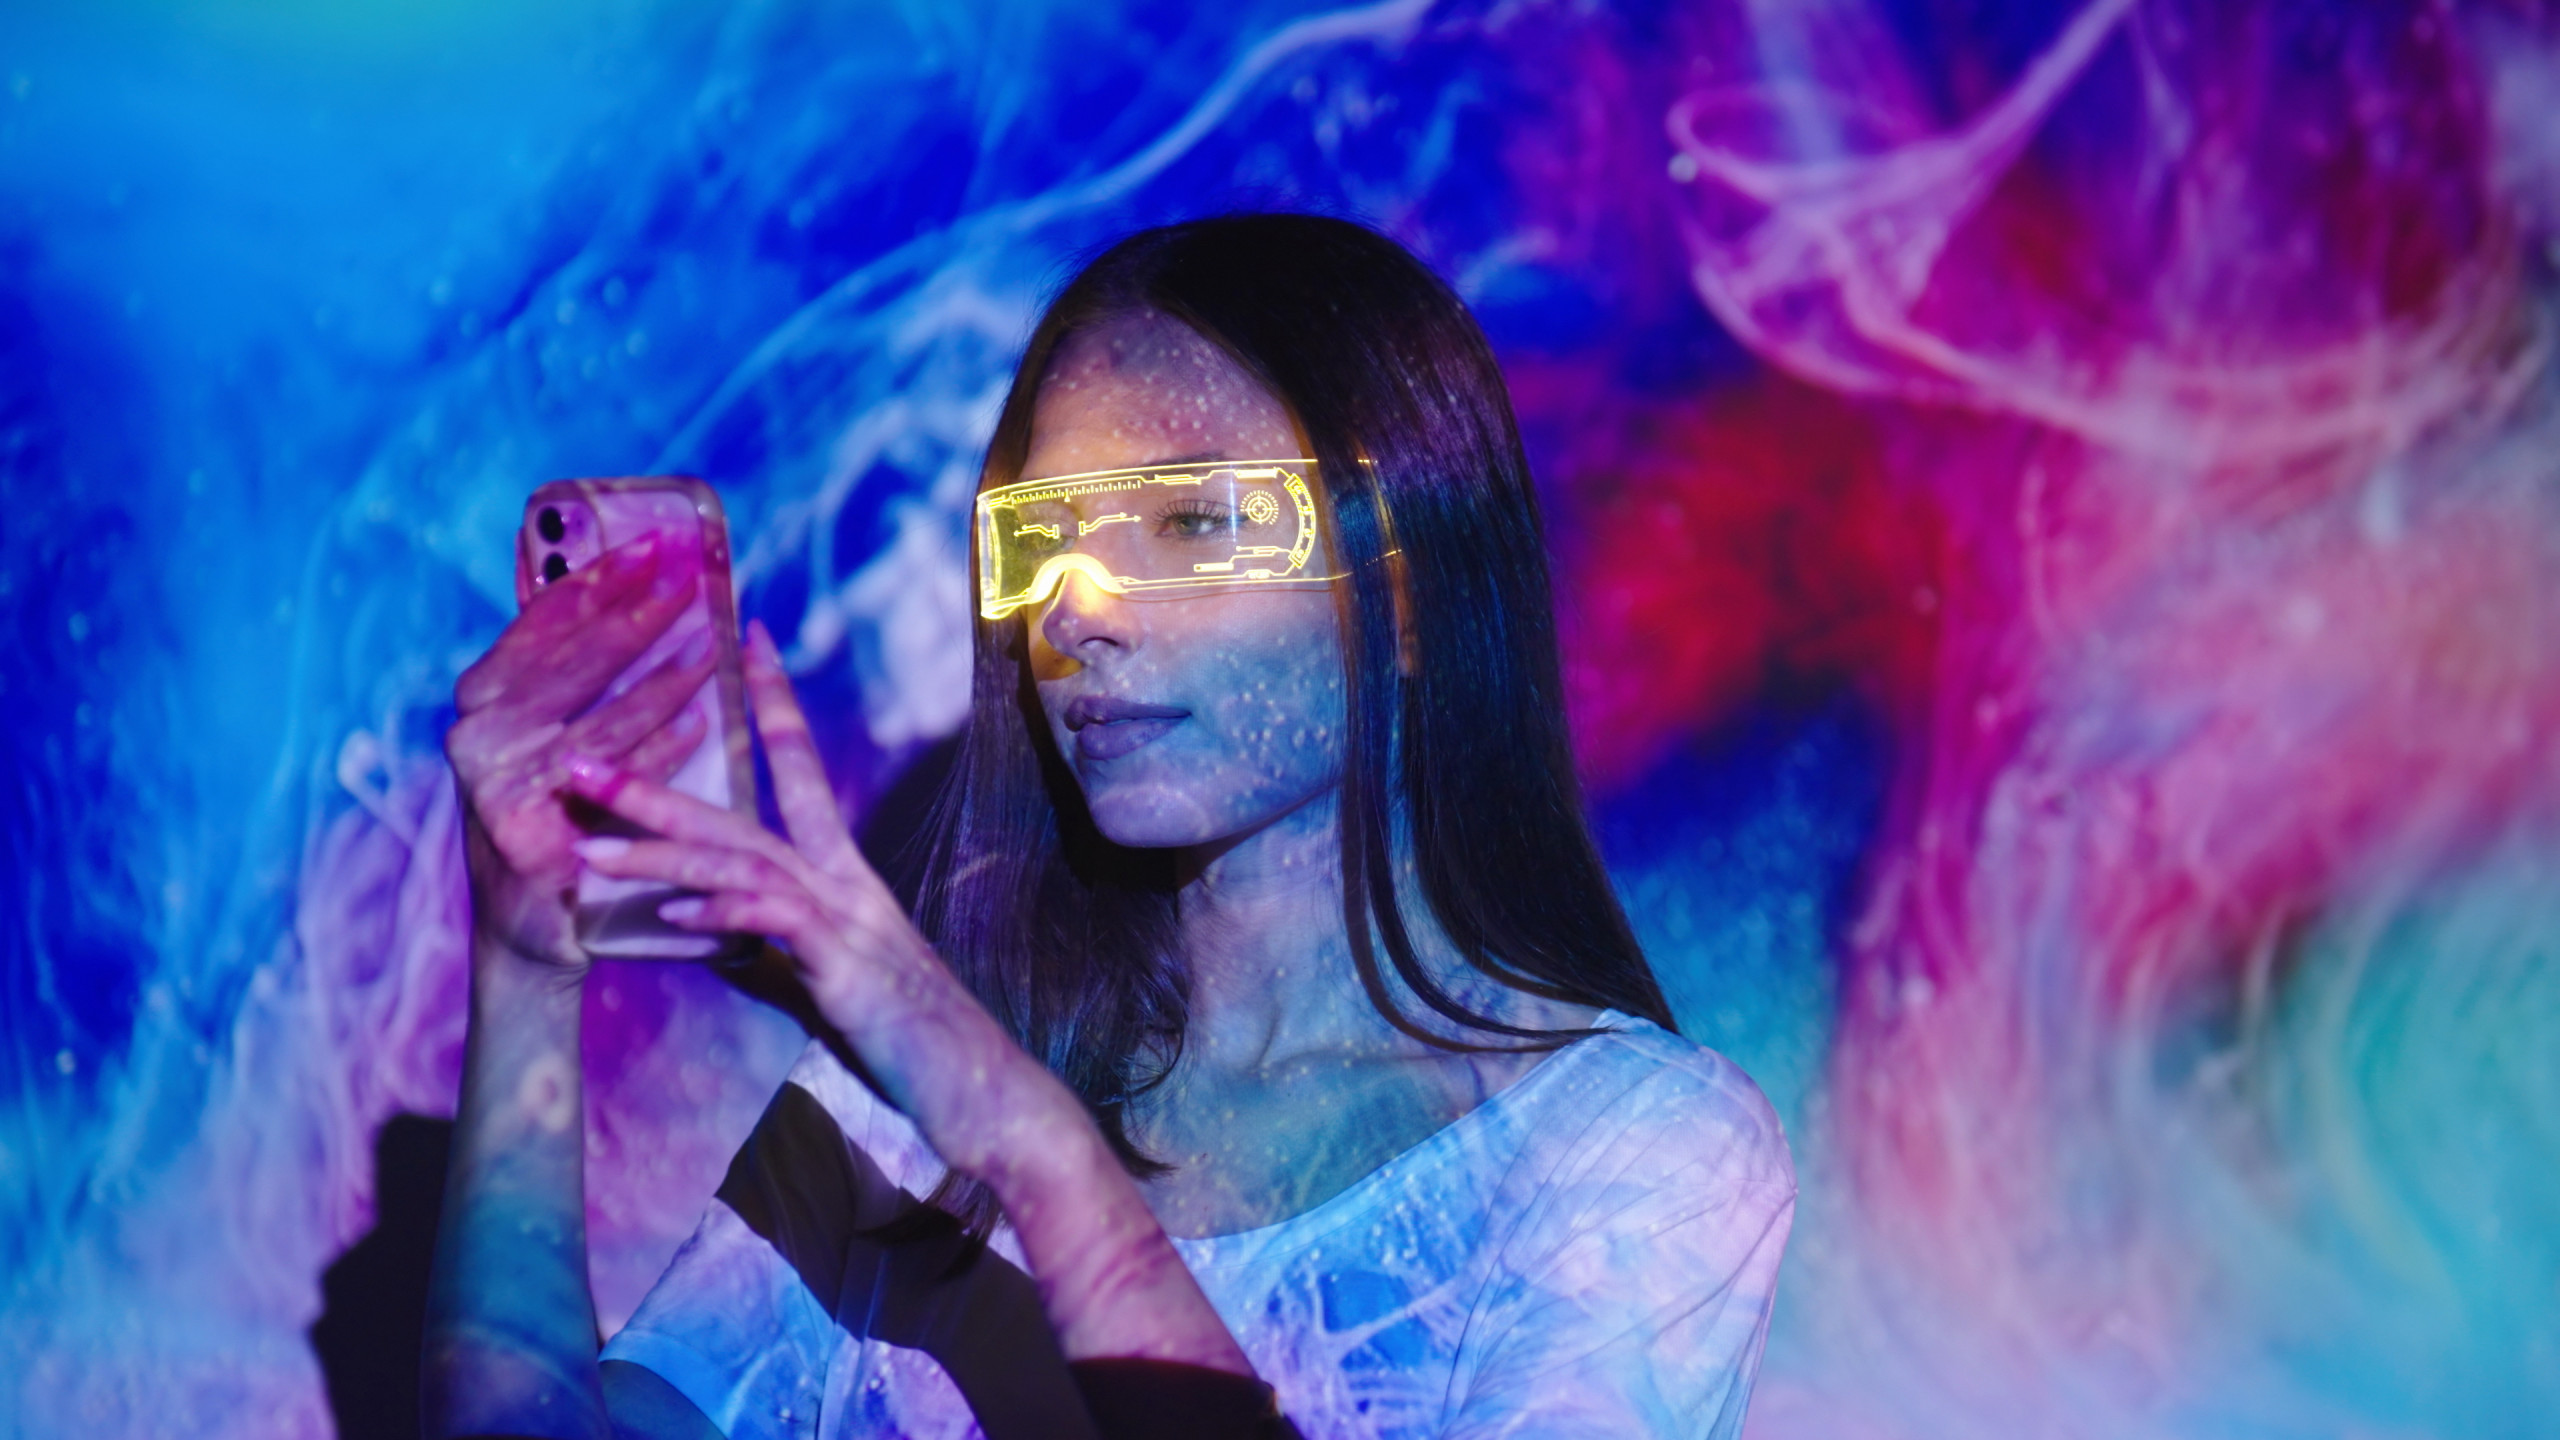 Jeune femme portant des lunettes de réalitée augmentée et tenant son smartphone à deux mains. Elle est baignée de la lumière d'une oeuvre d'art projetée sur le mur derrière elle.